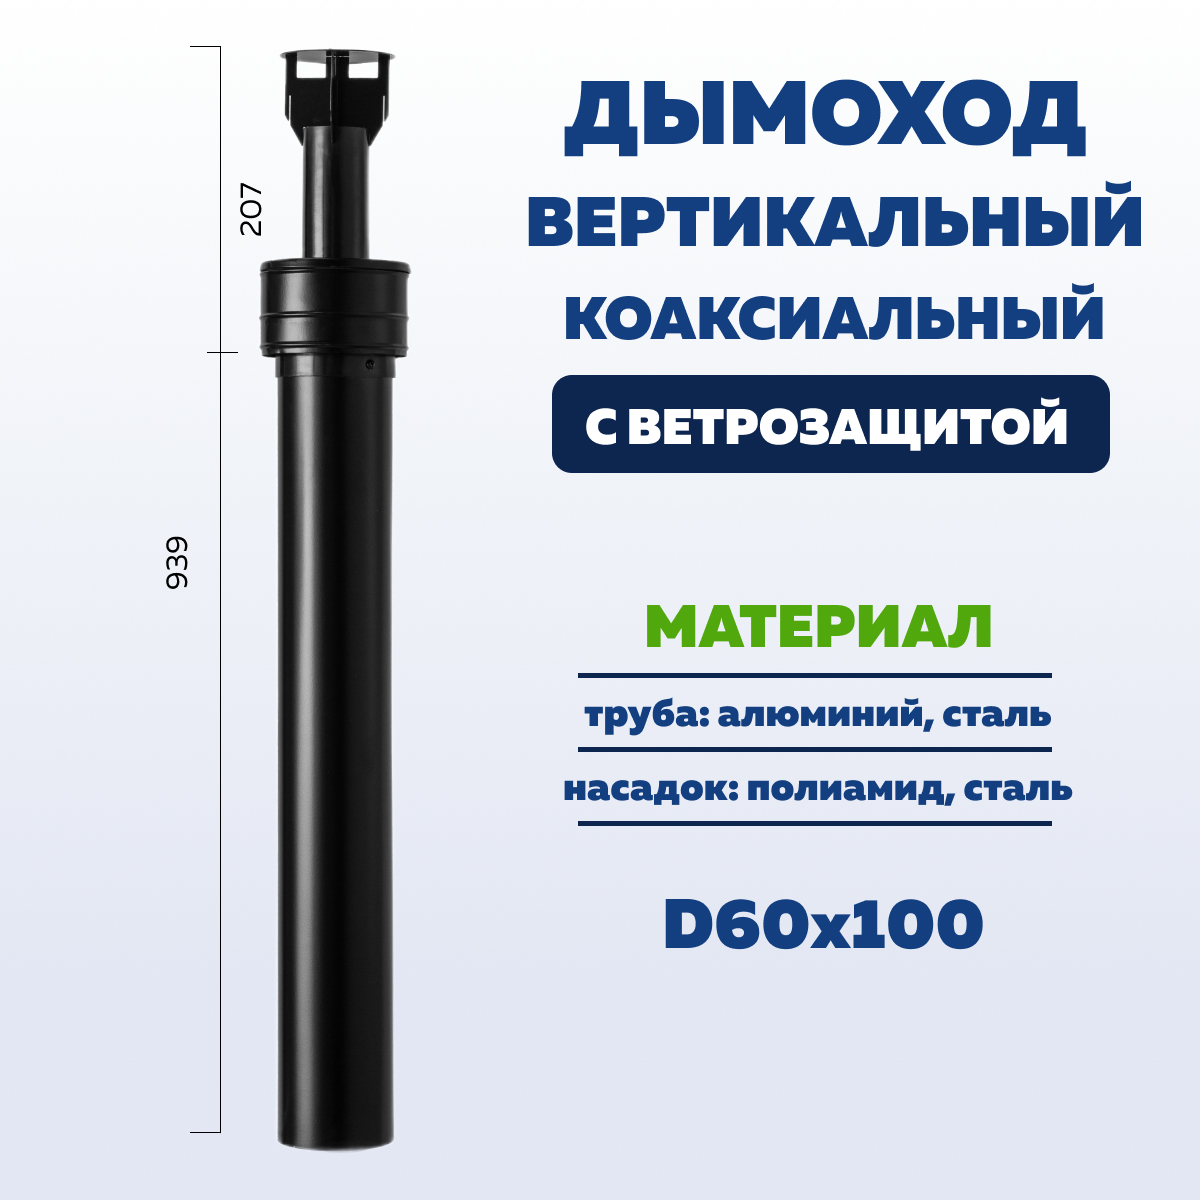 Дымоход вертикальный коаксиальный УТДК 60 х 100 мм с ветрозащитой 01.01.700.100